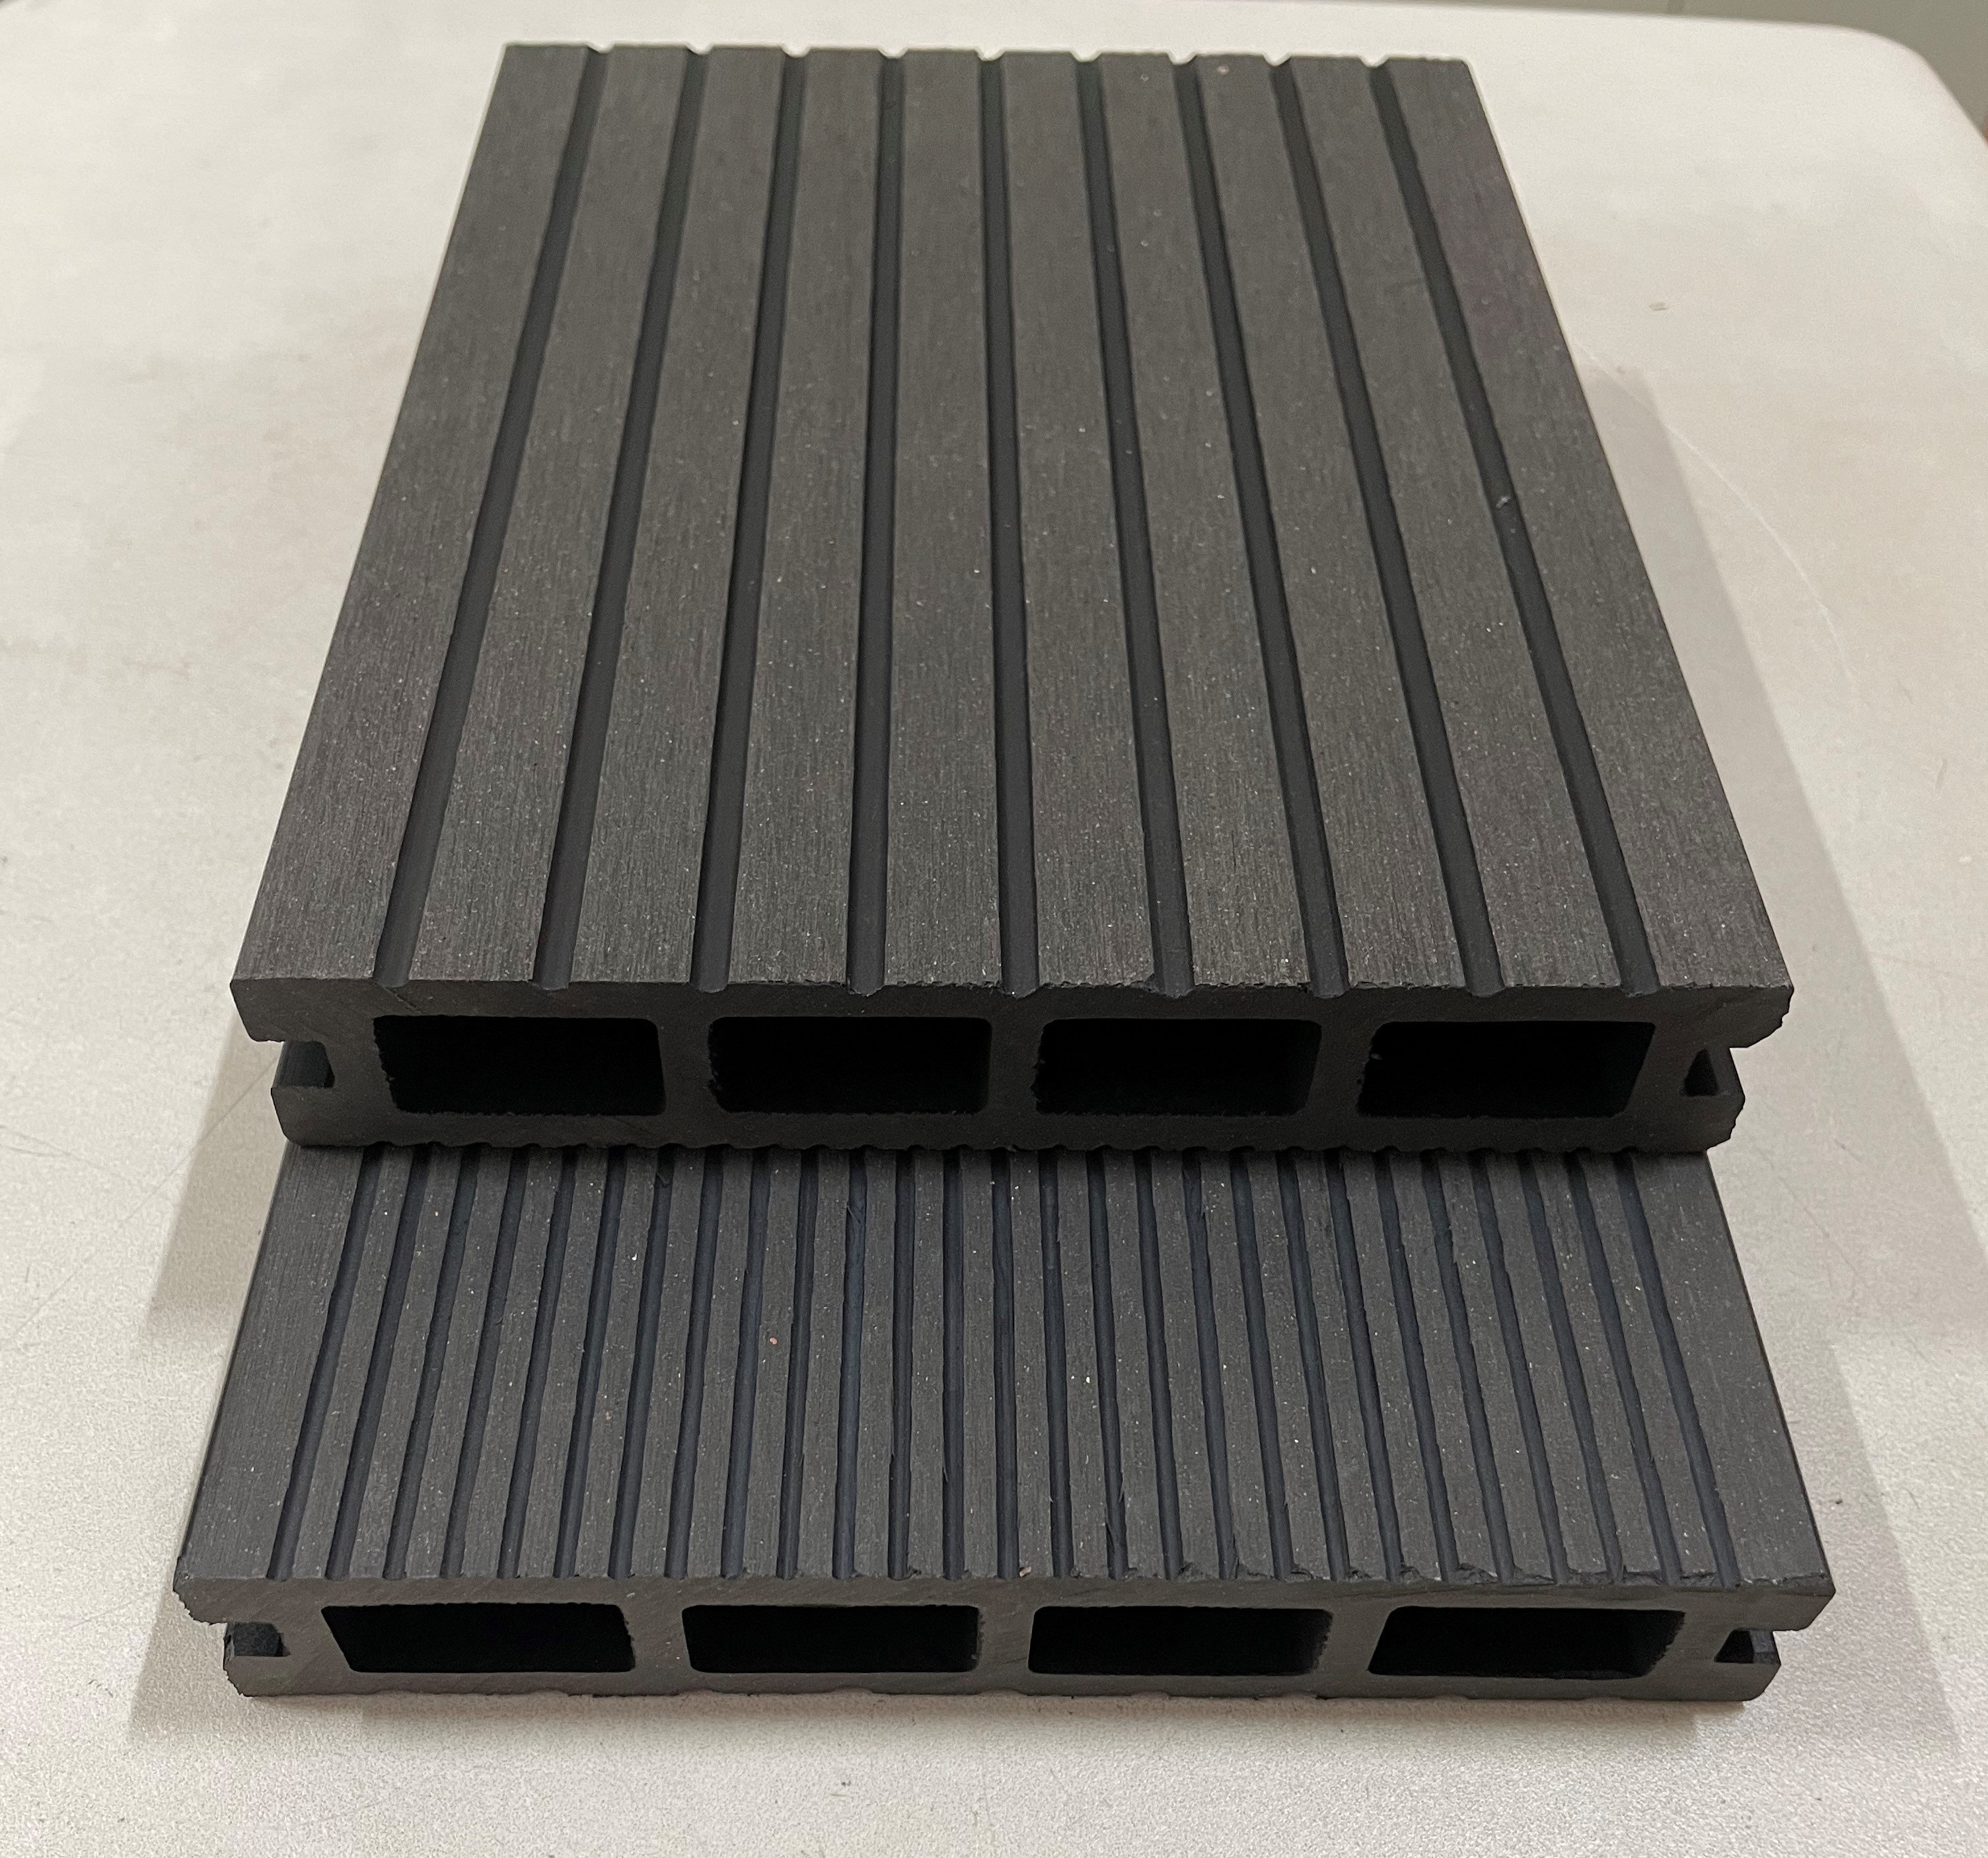 安徽木塑地板厂家 150x25方孔塑木地板 抗压耐磨 量大价优